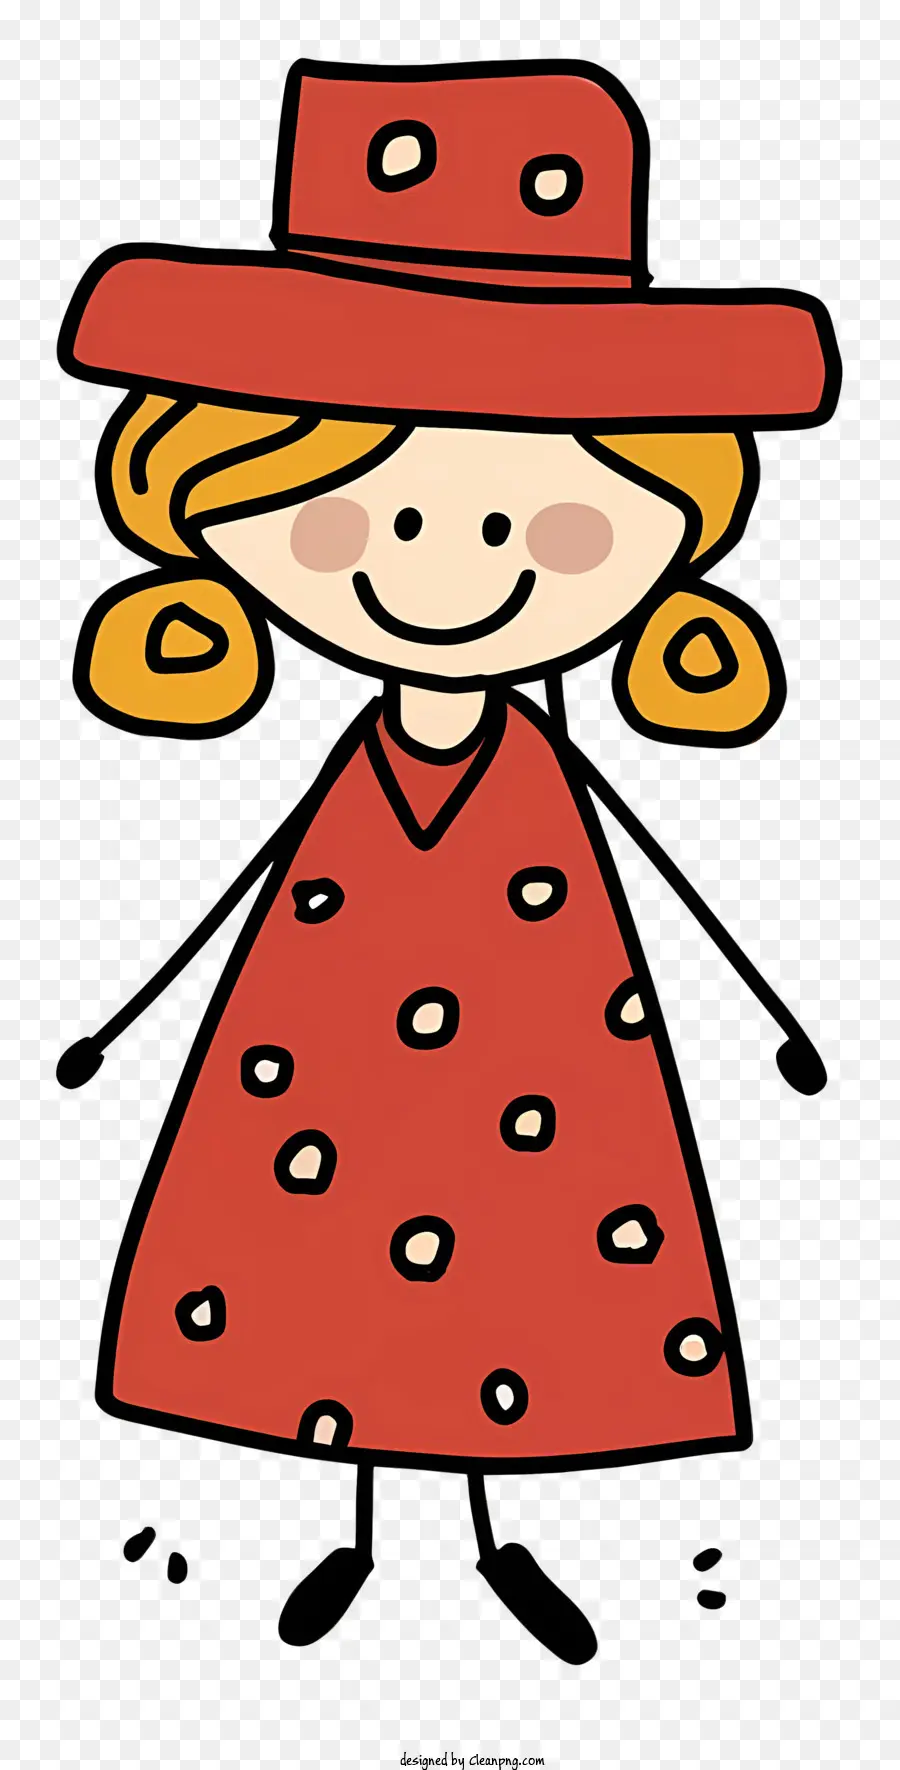 персонажа из мультфильма，Красное платье в горошек PNG